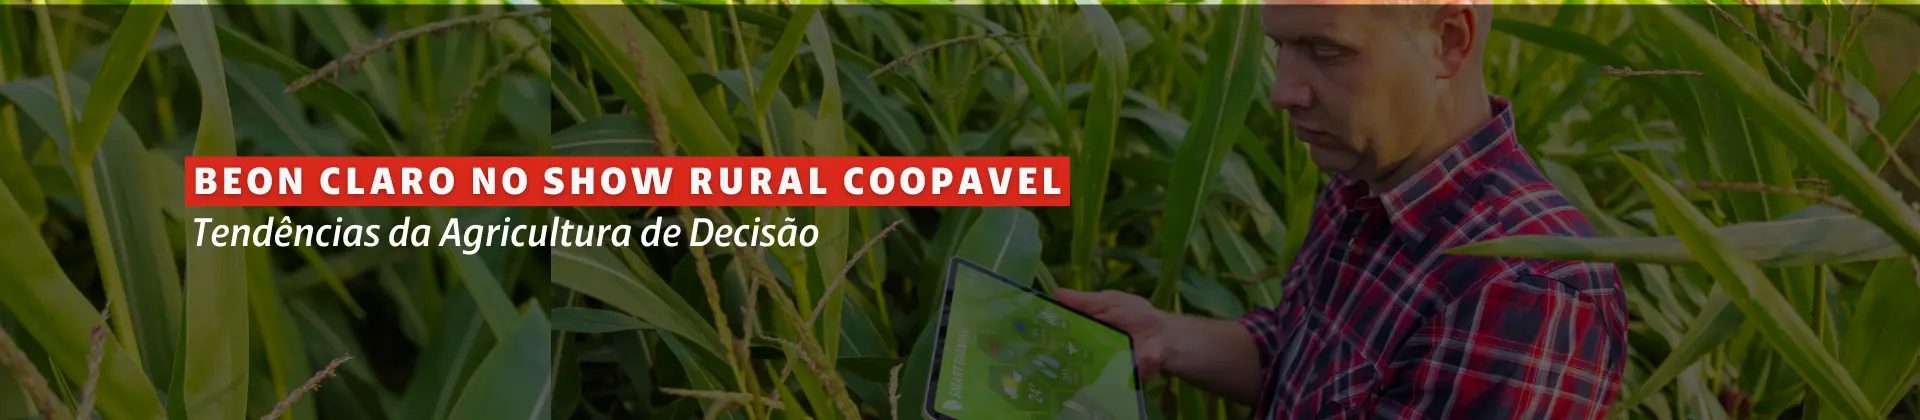 Na imagem vemos um campo de plantação com muitas folhas verdes, e um homem branco com um tablet na mão verificando informações de agro